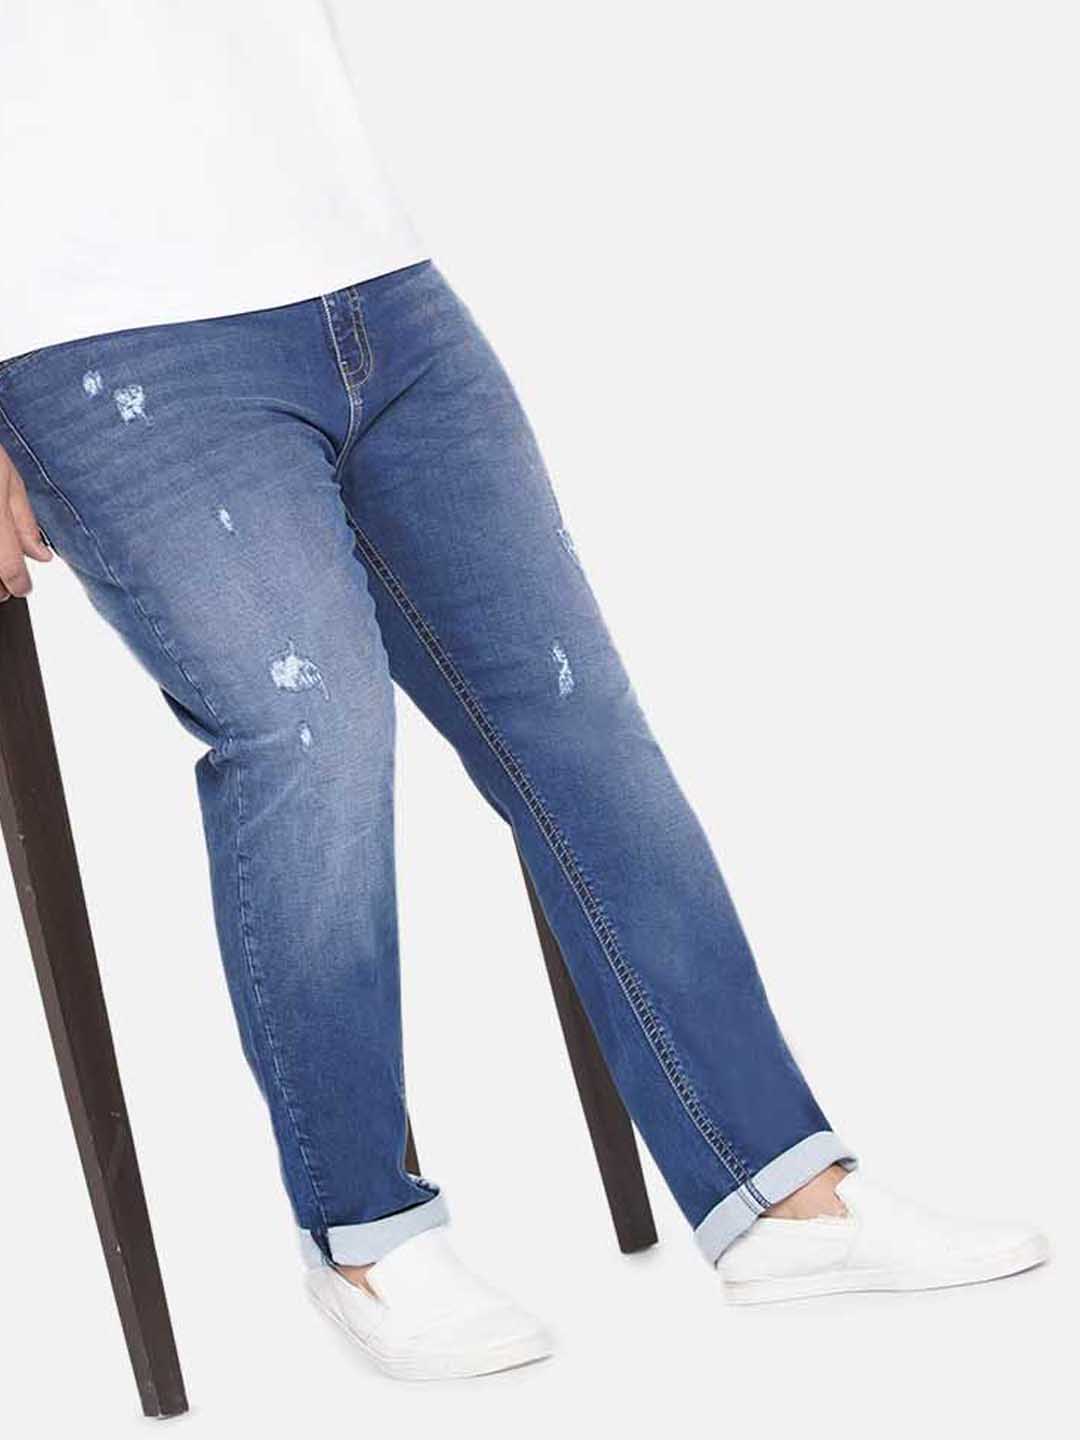 bottomwear/jeans/JPJ12237/jpj12237-1.jpg